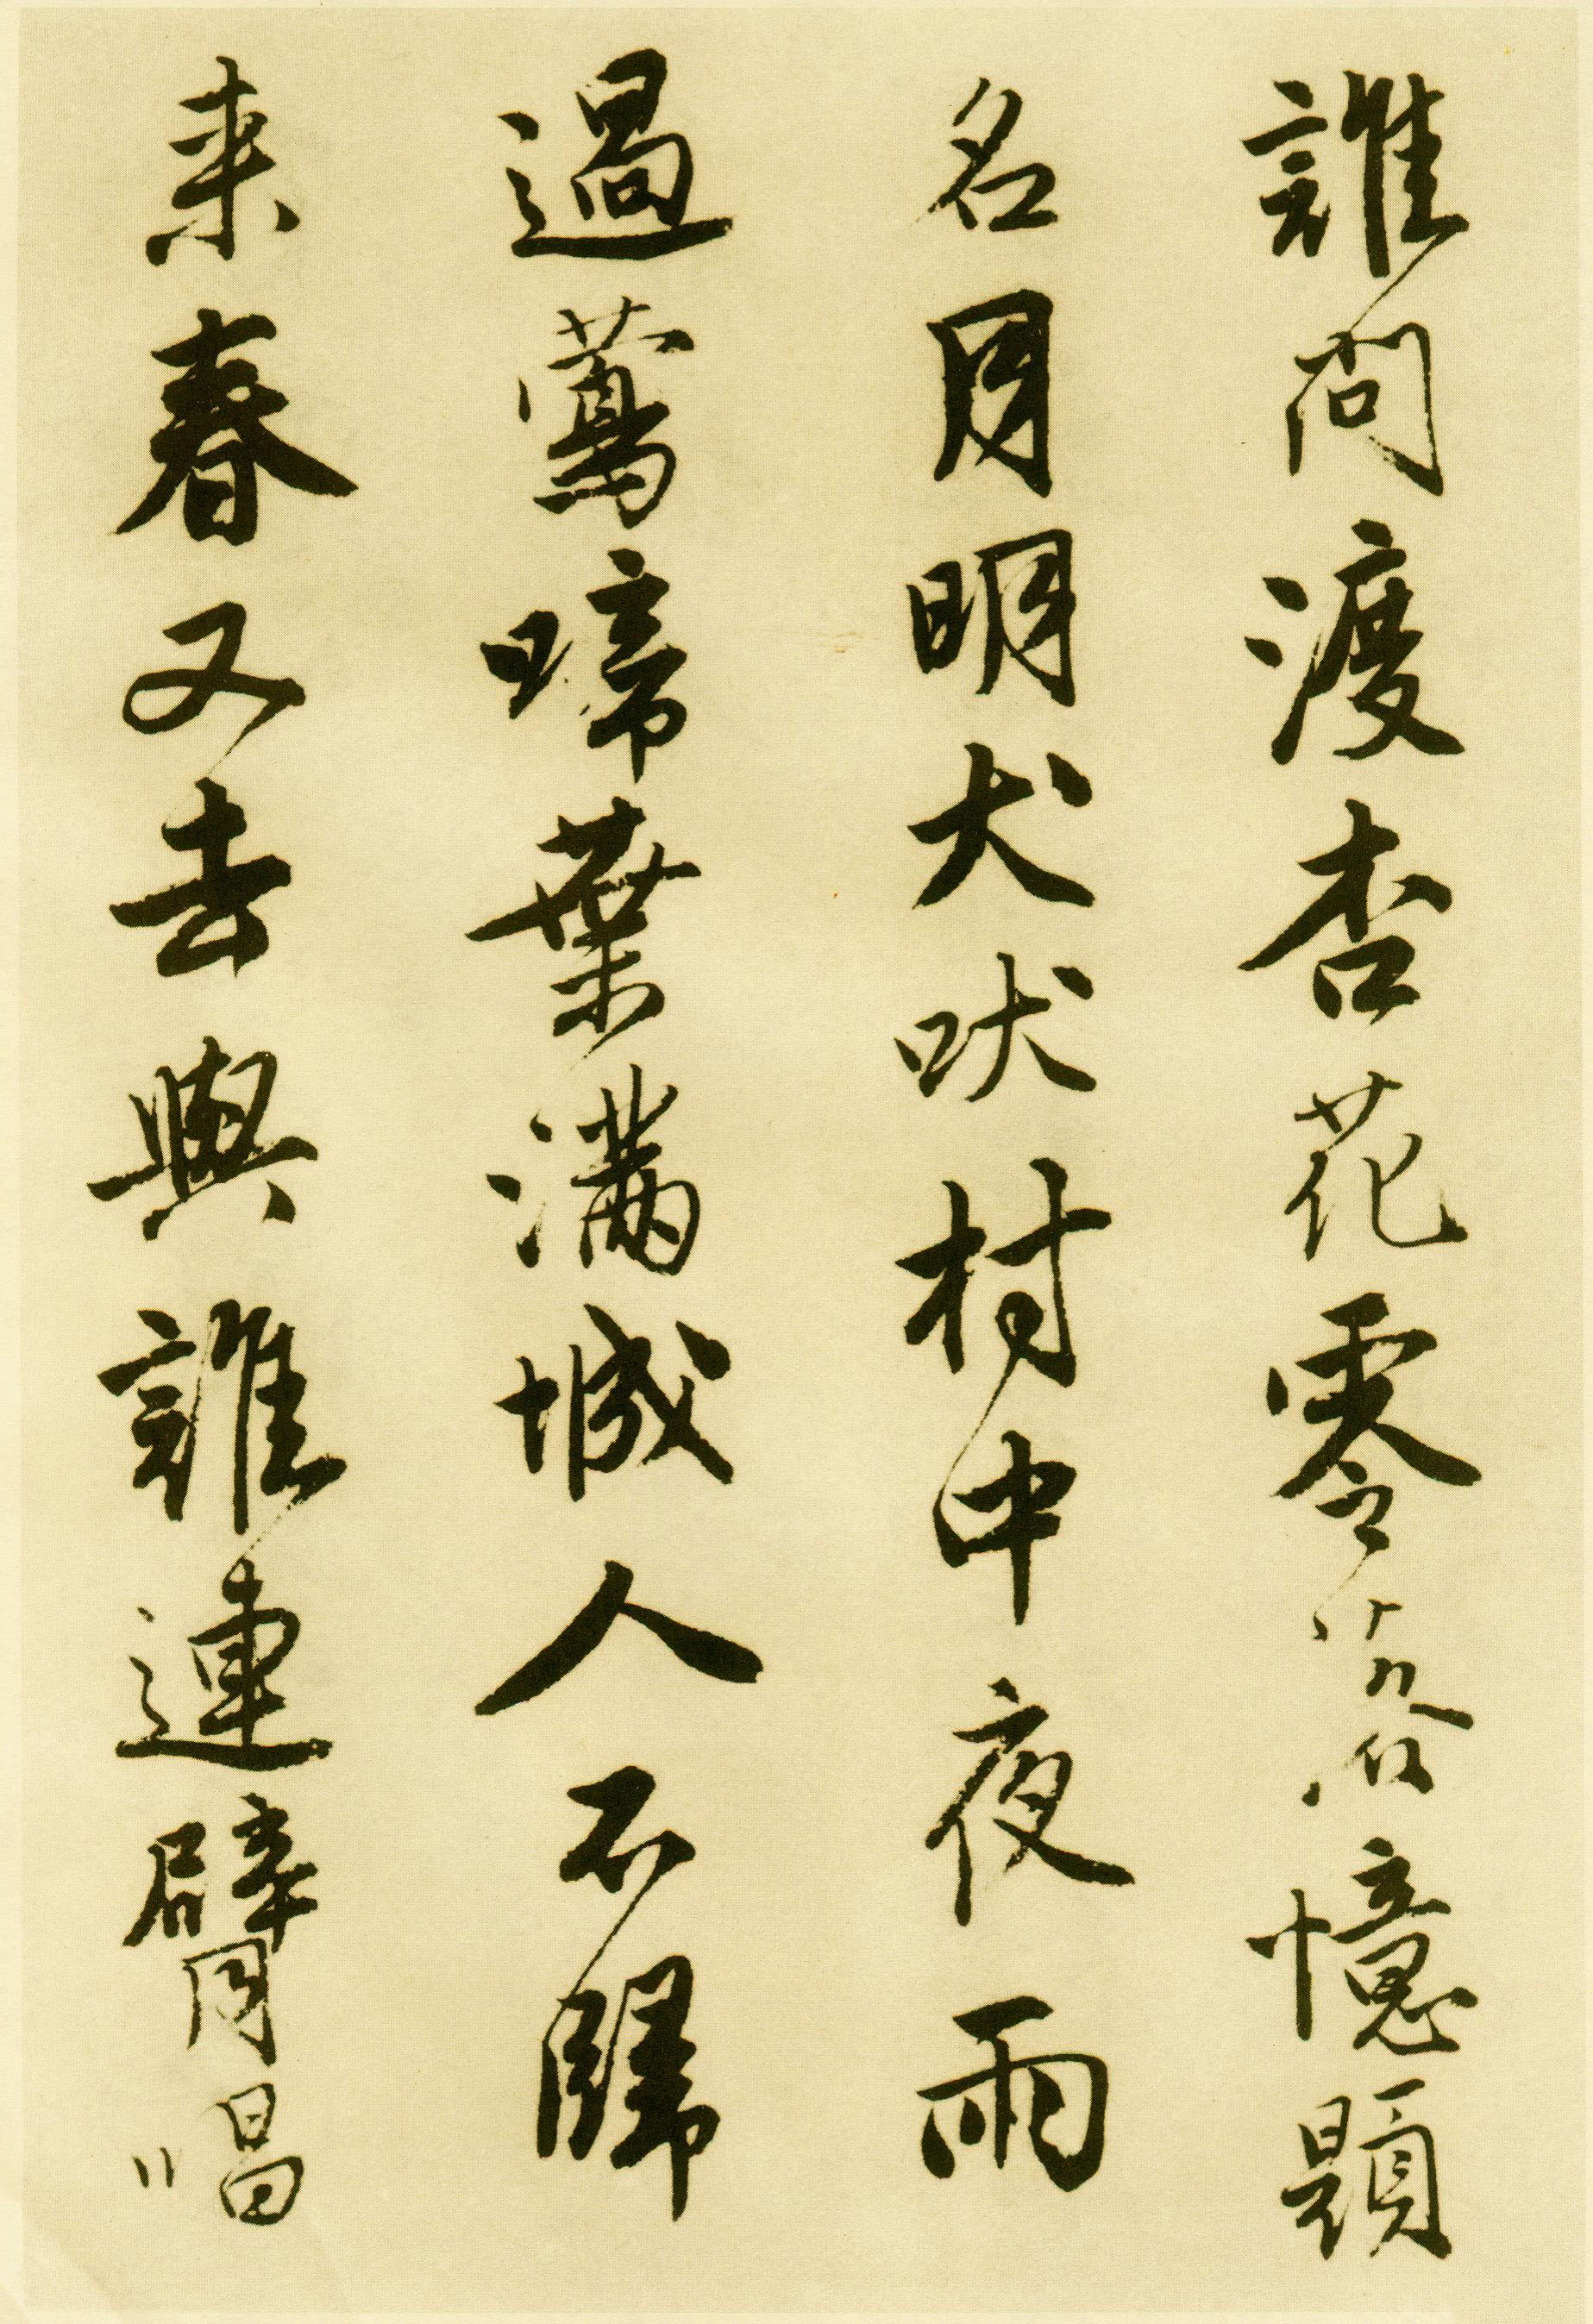 唐寅行书《落花诗册》(一)-苏州市博物馆藏(图12)